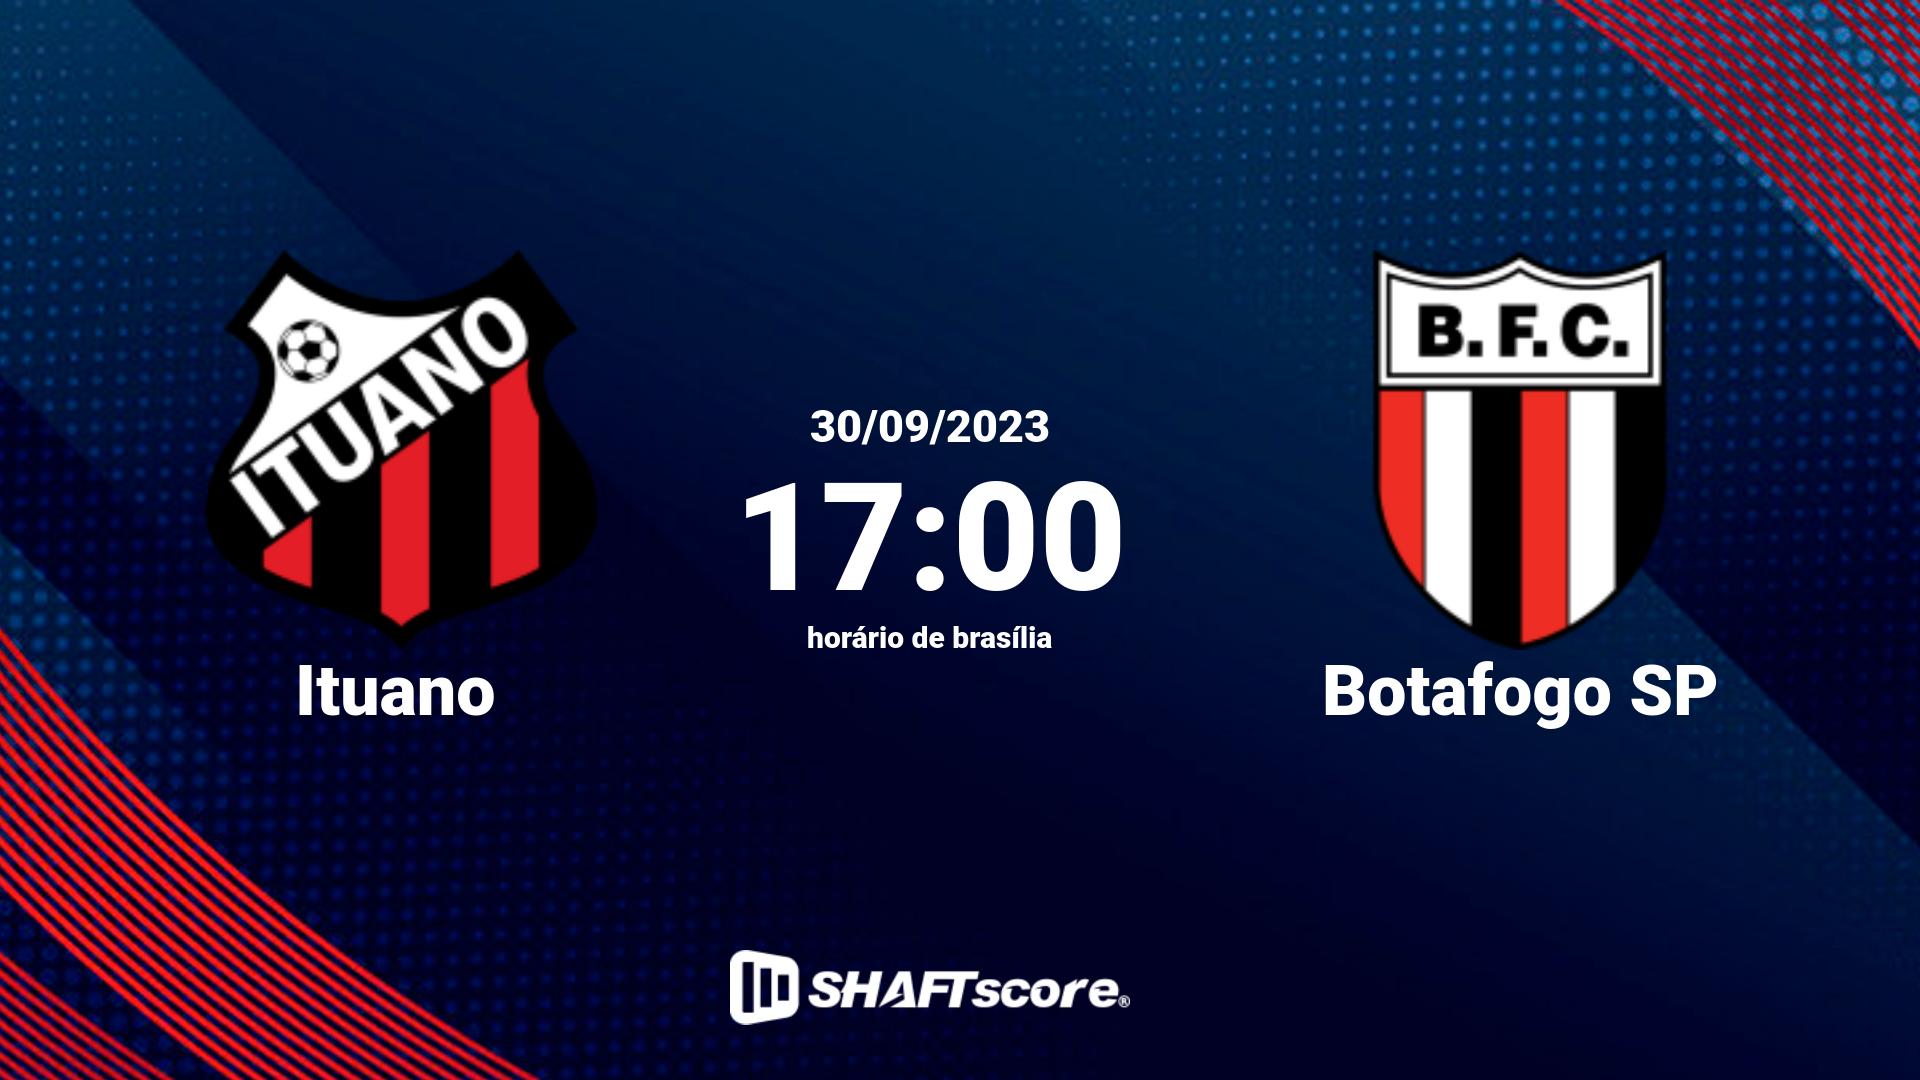 Estatísticas do jogo Ituano vs Botafogo SP 30.09 17:00